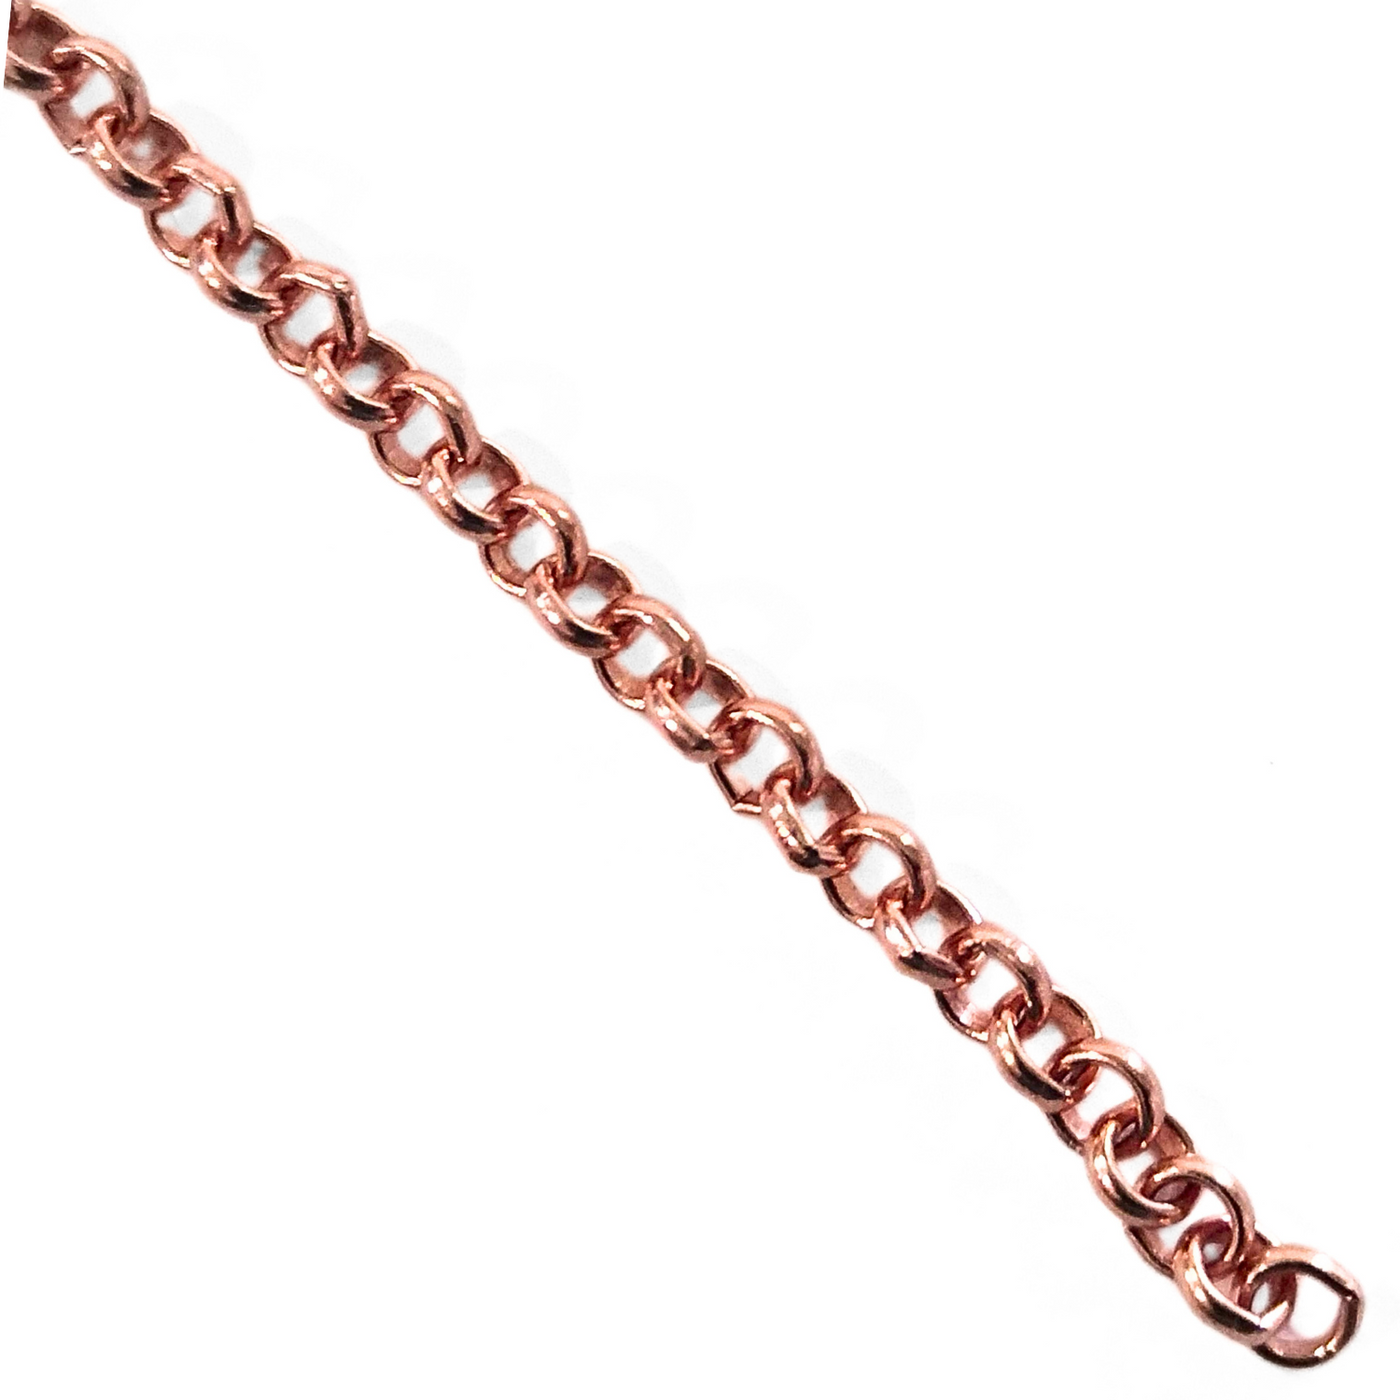 Copper Rolo Chain 4150, 1 inch